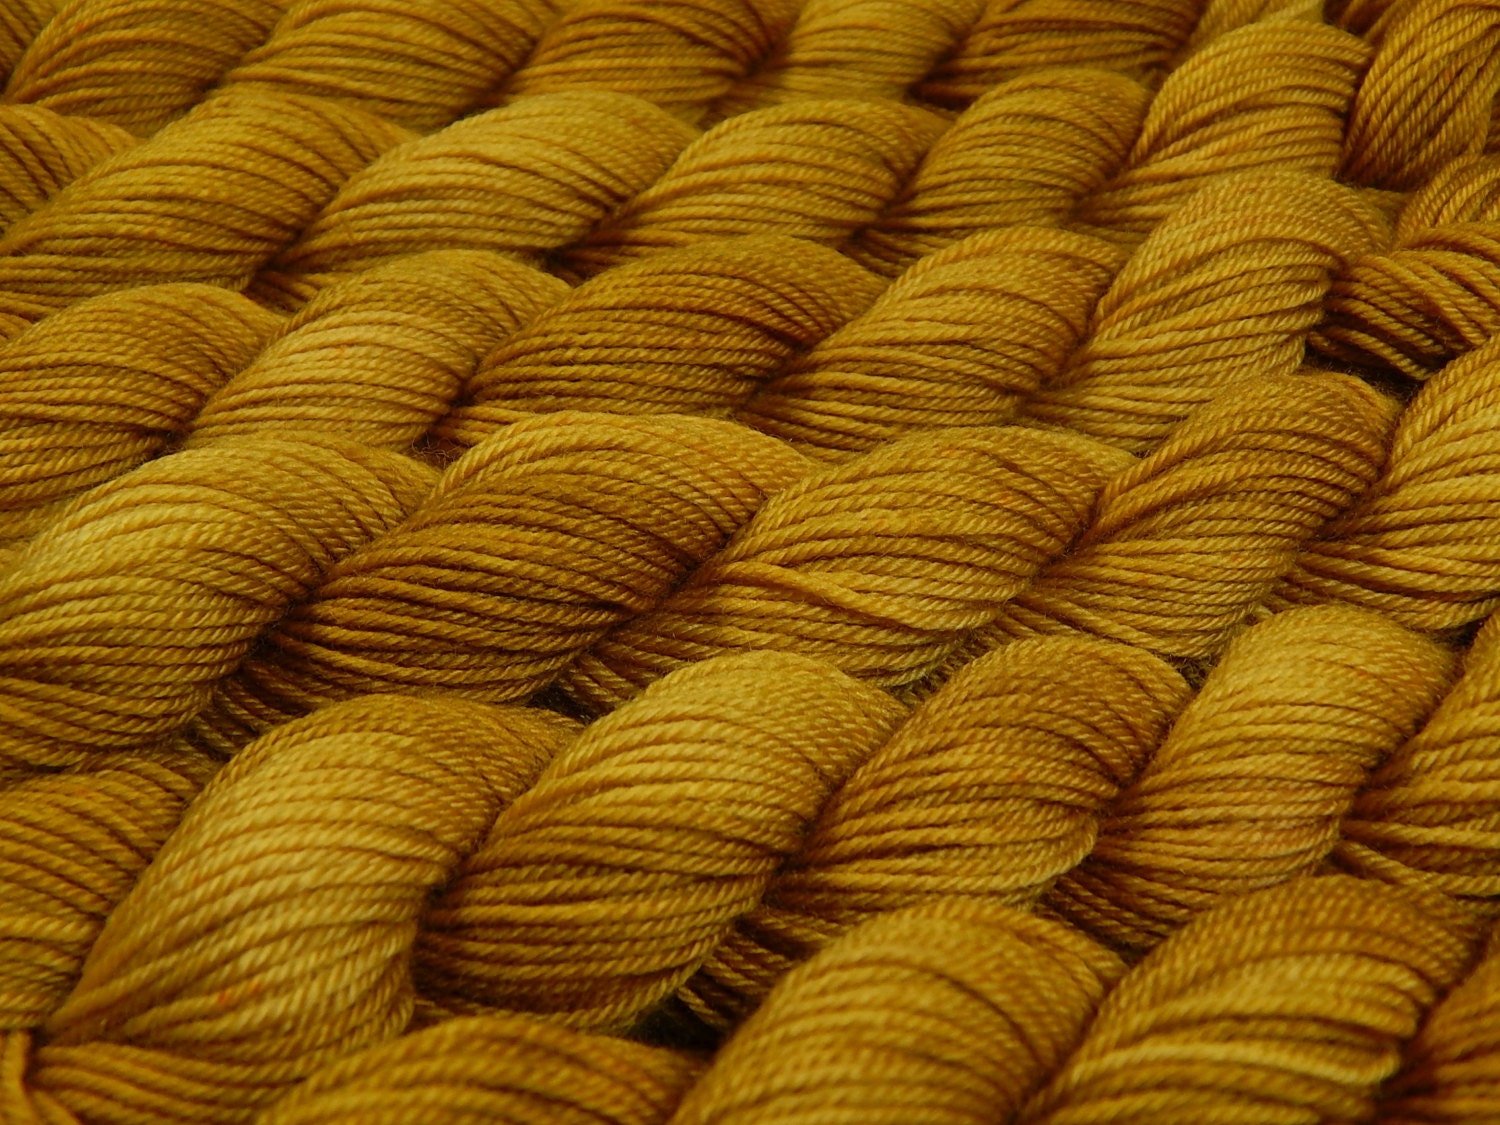 Mini Skeins Hand Dyed Yarn, Sock Weight 4 Ply Superwash Merino Wool - Honey Mustard